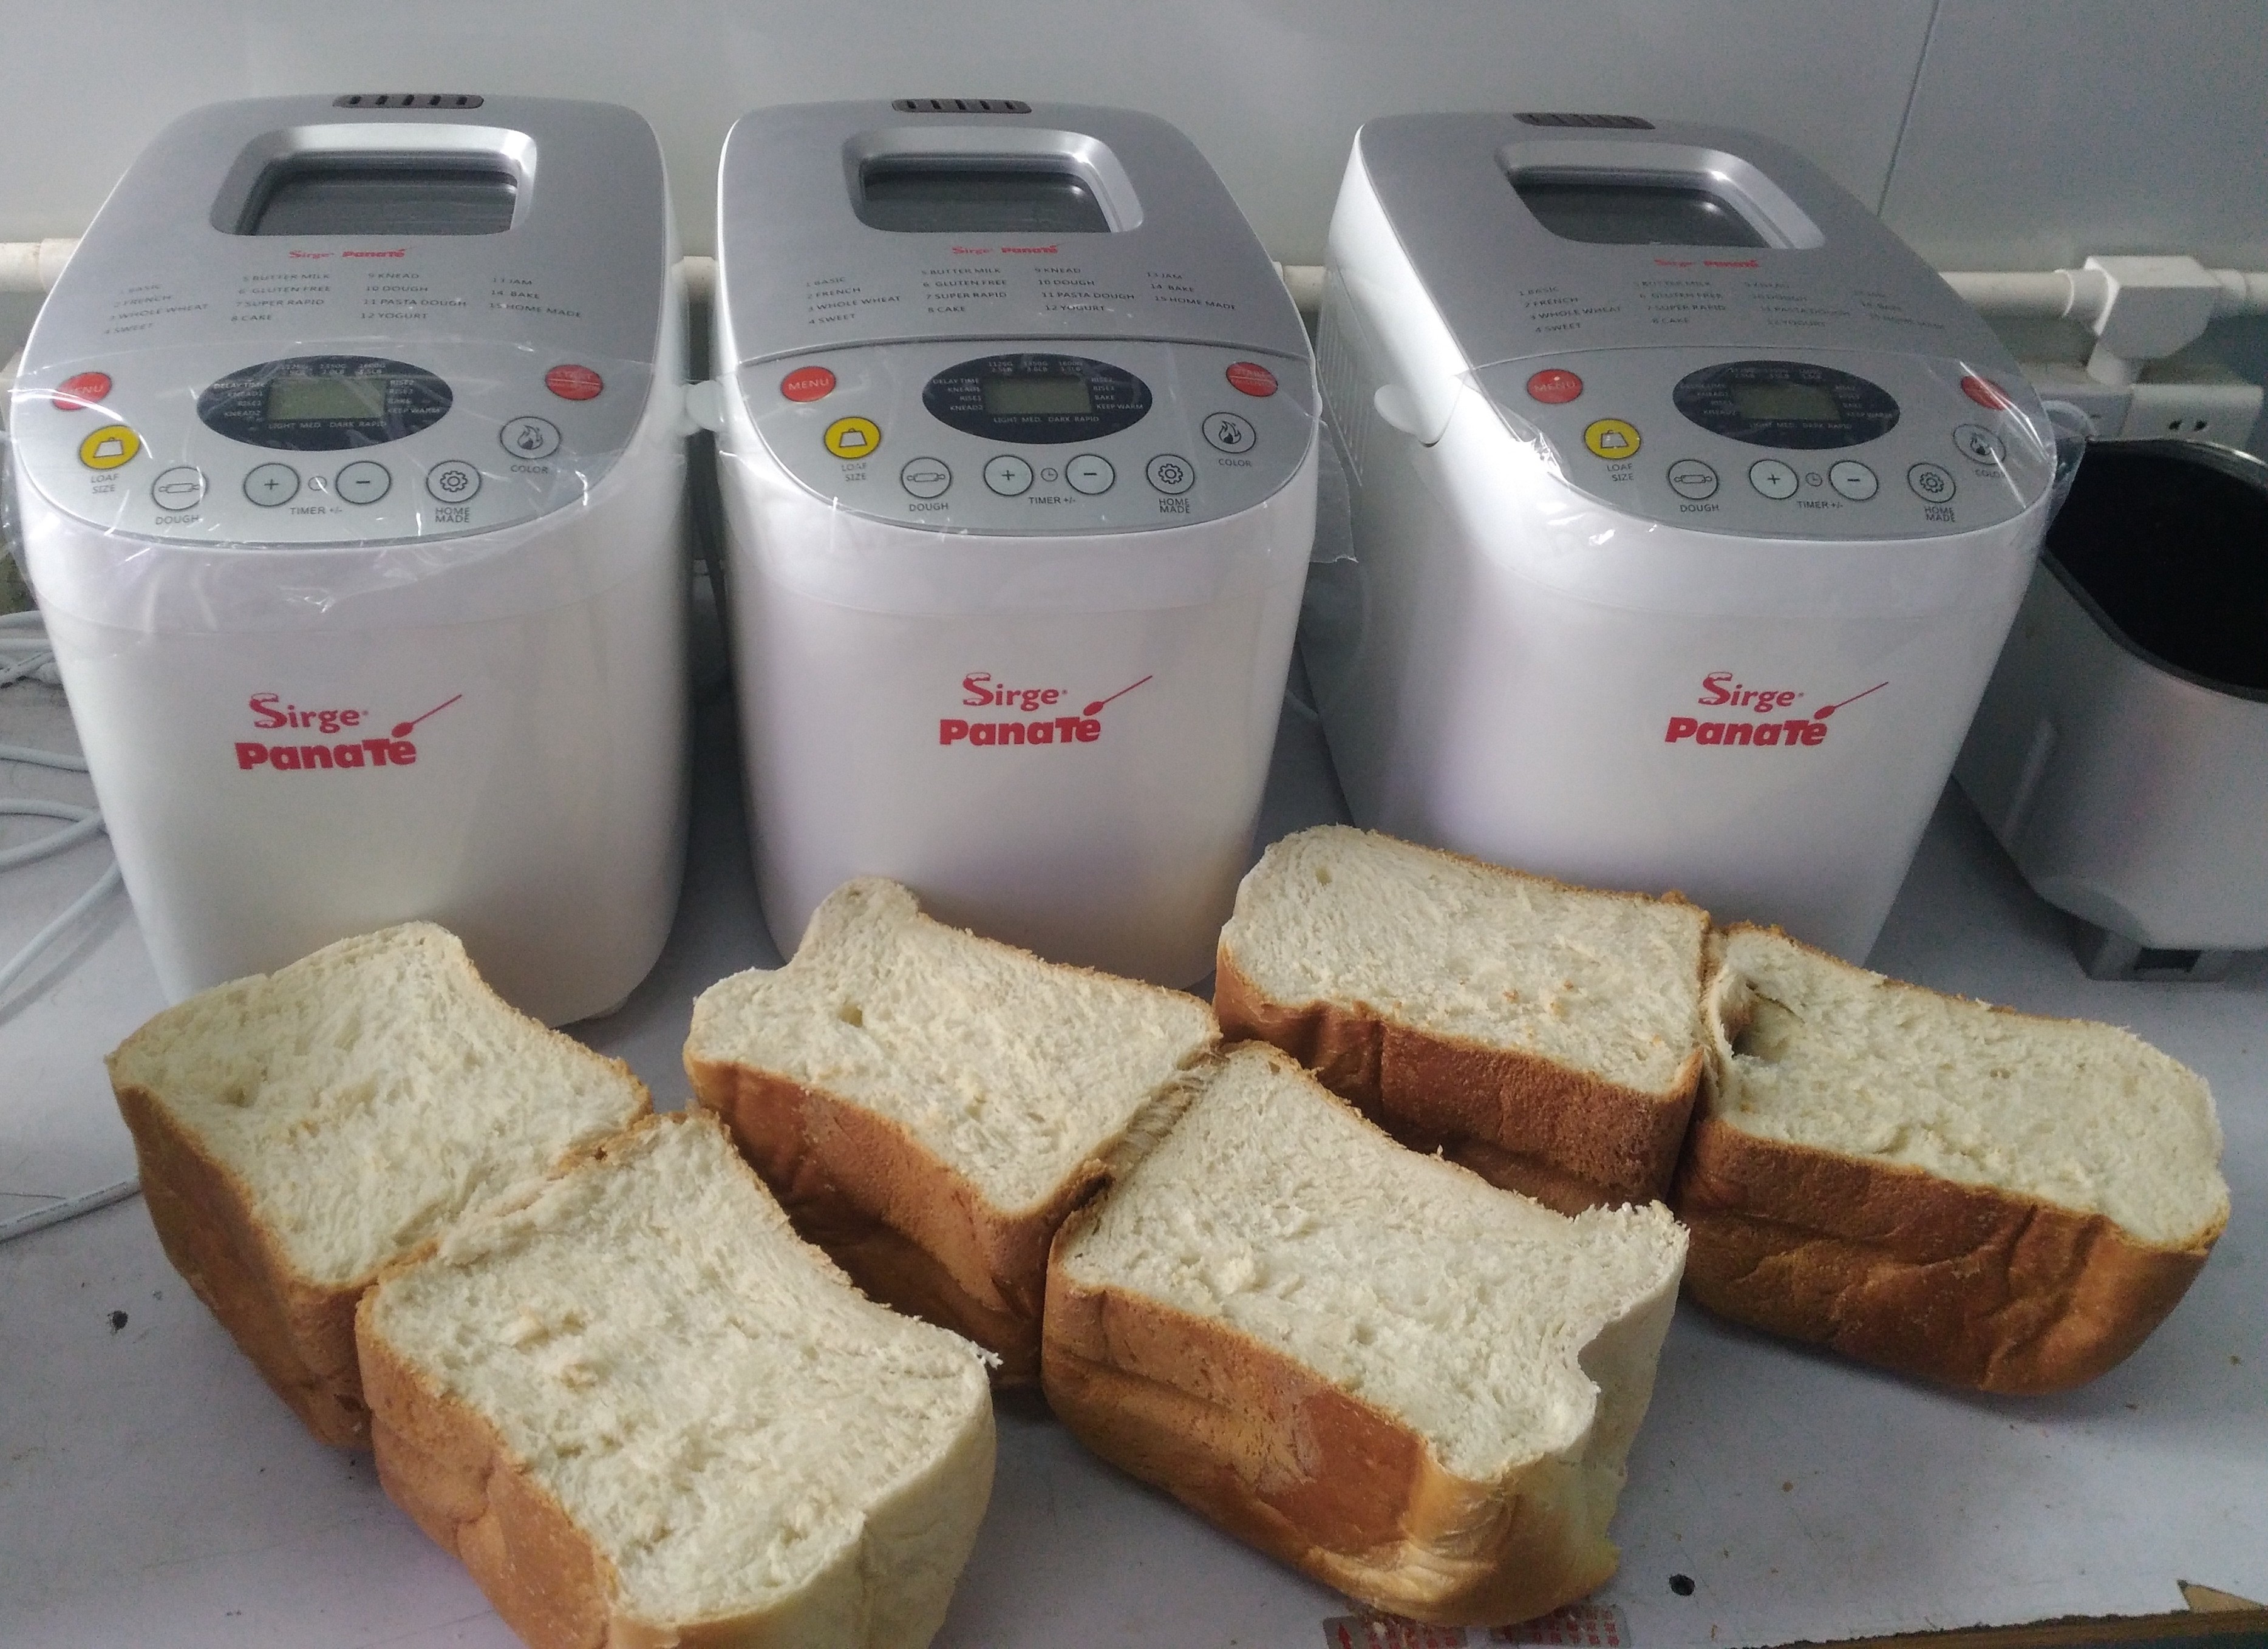 Macchina per il pane, guida all'acquisto - Guida per Casa